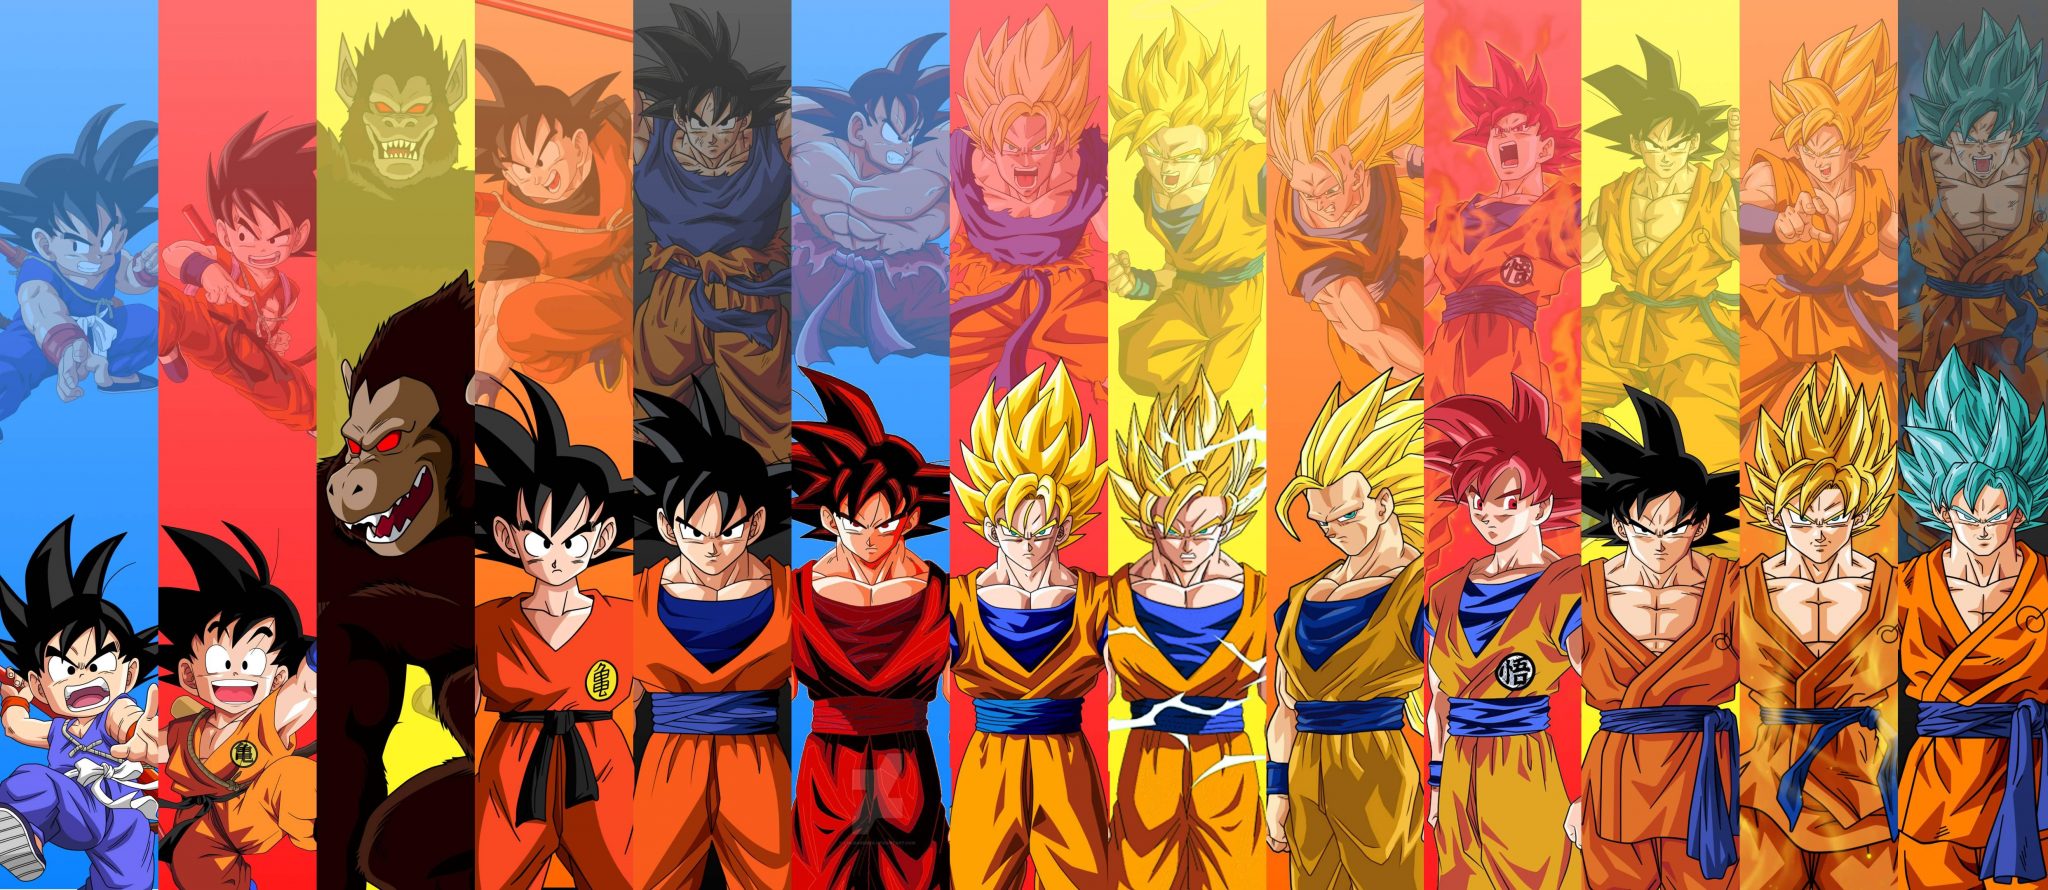 Estas son las 19 transformaciones de Goku en Dragon Ball